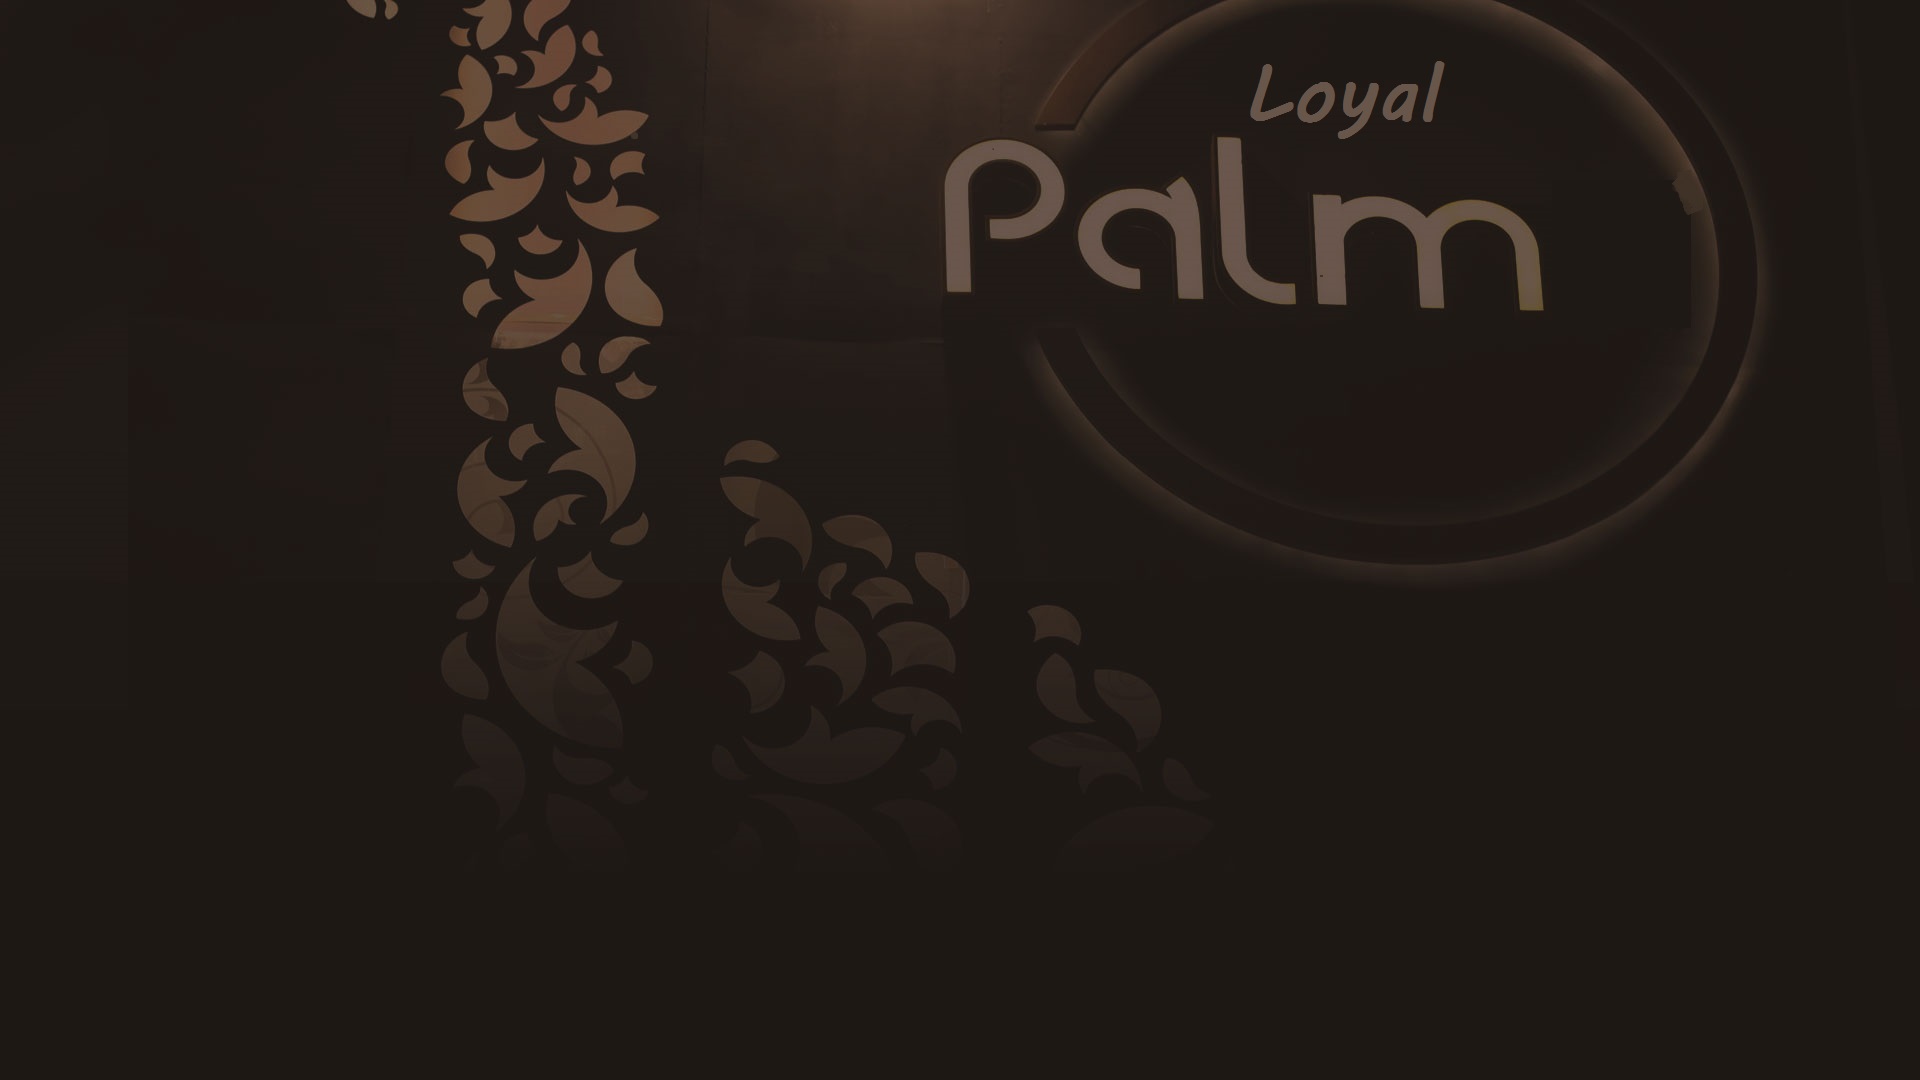 Loyal Palm Cafe 3